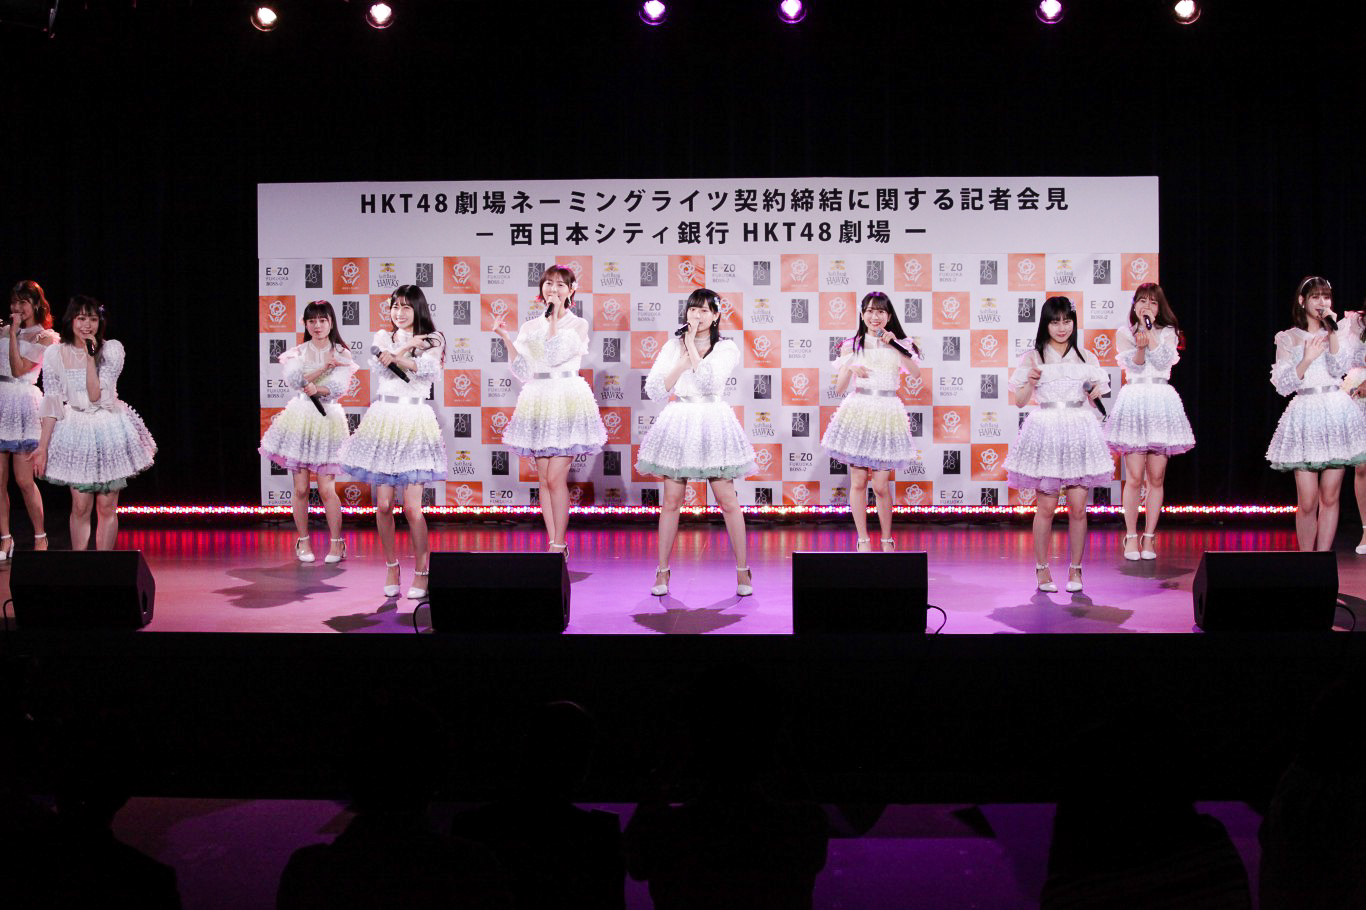 16名のメンバーがステージいっぱいに歌とダンスで「青春の出口」を披露③　HKT48